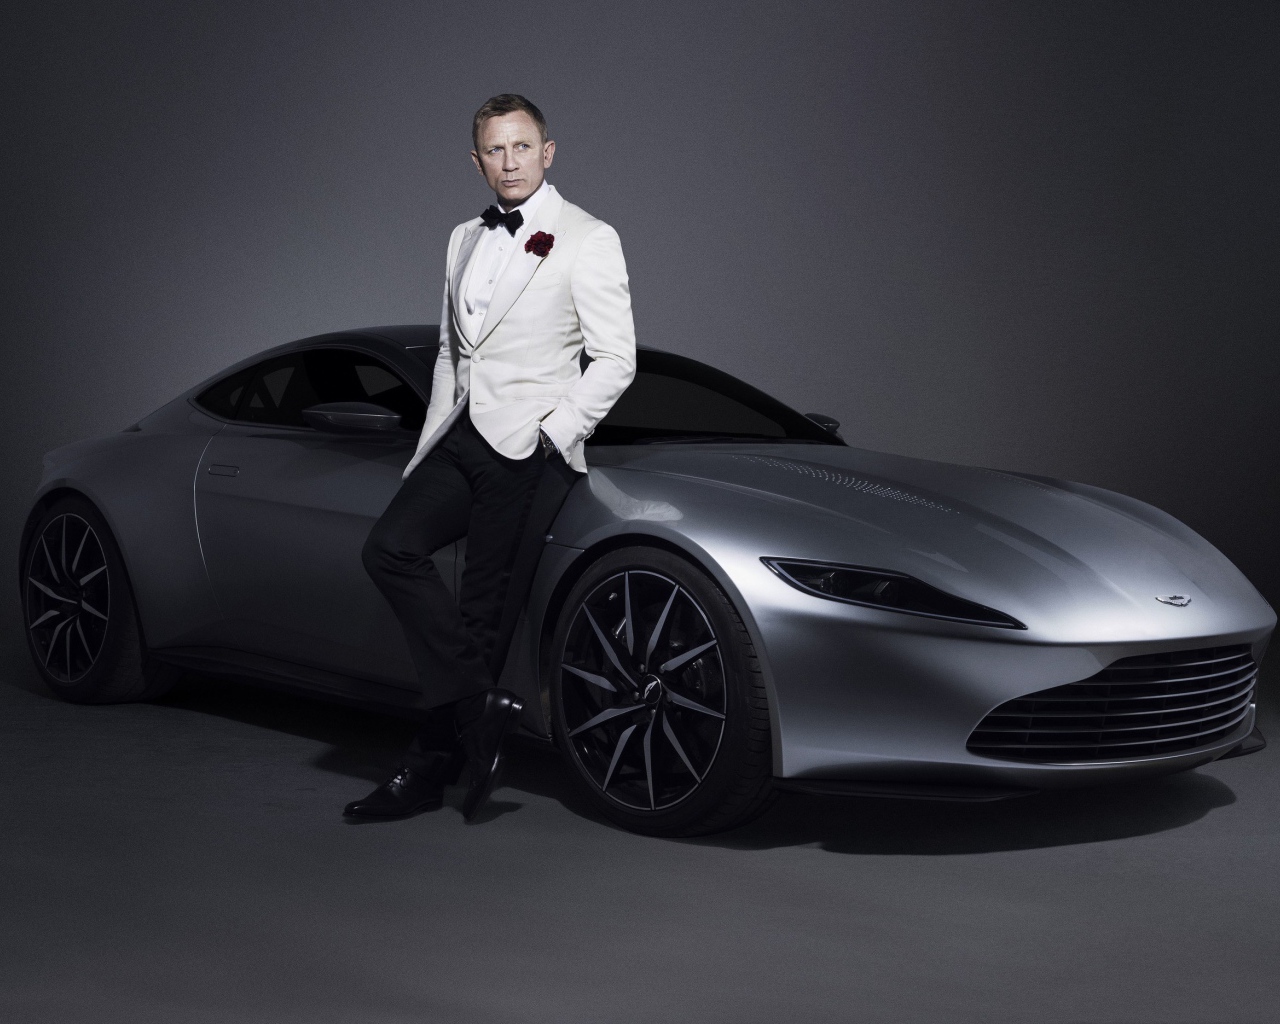 Знаменитый актер Дэниел Крэйг рядом с серебристым автомобилем Aston Martin